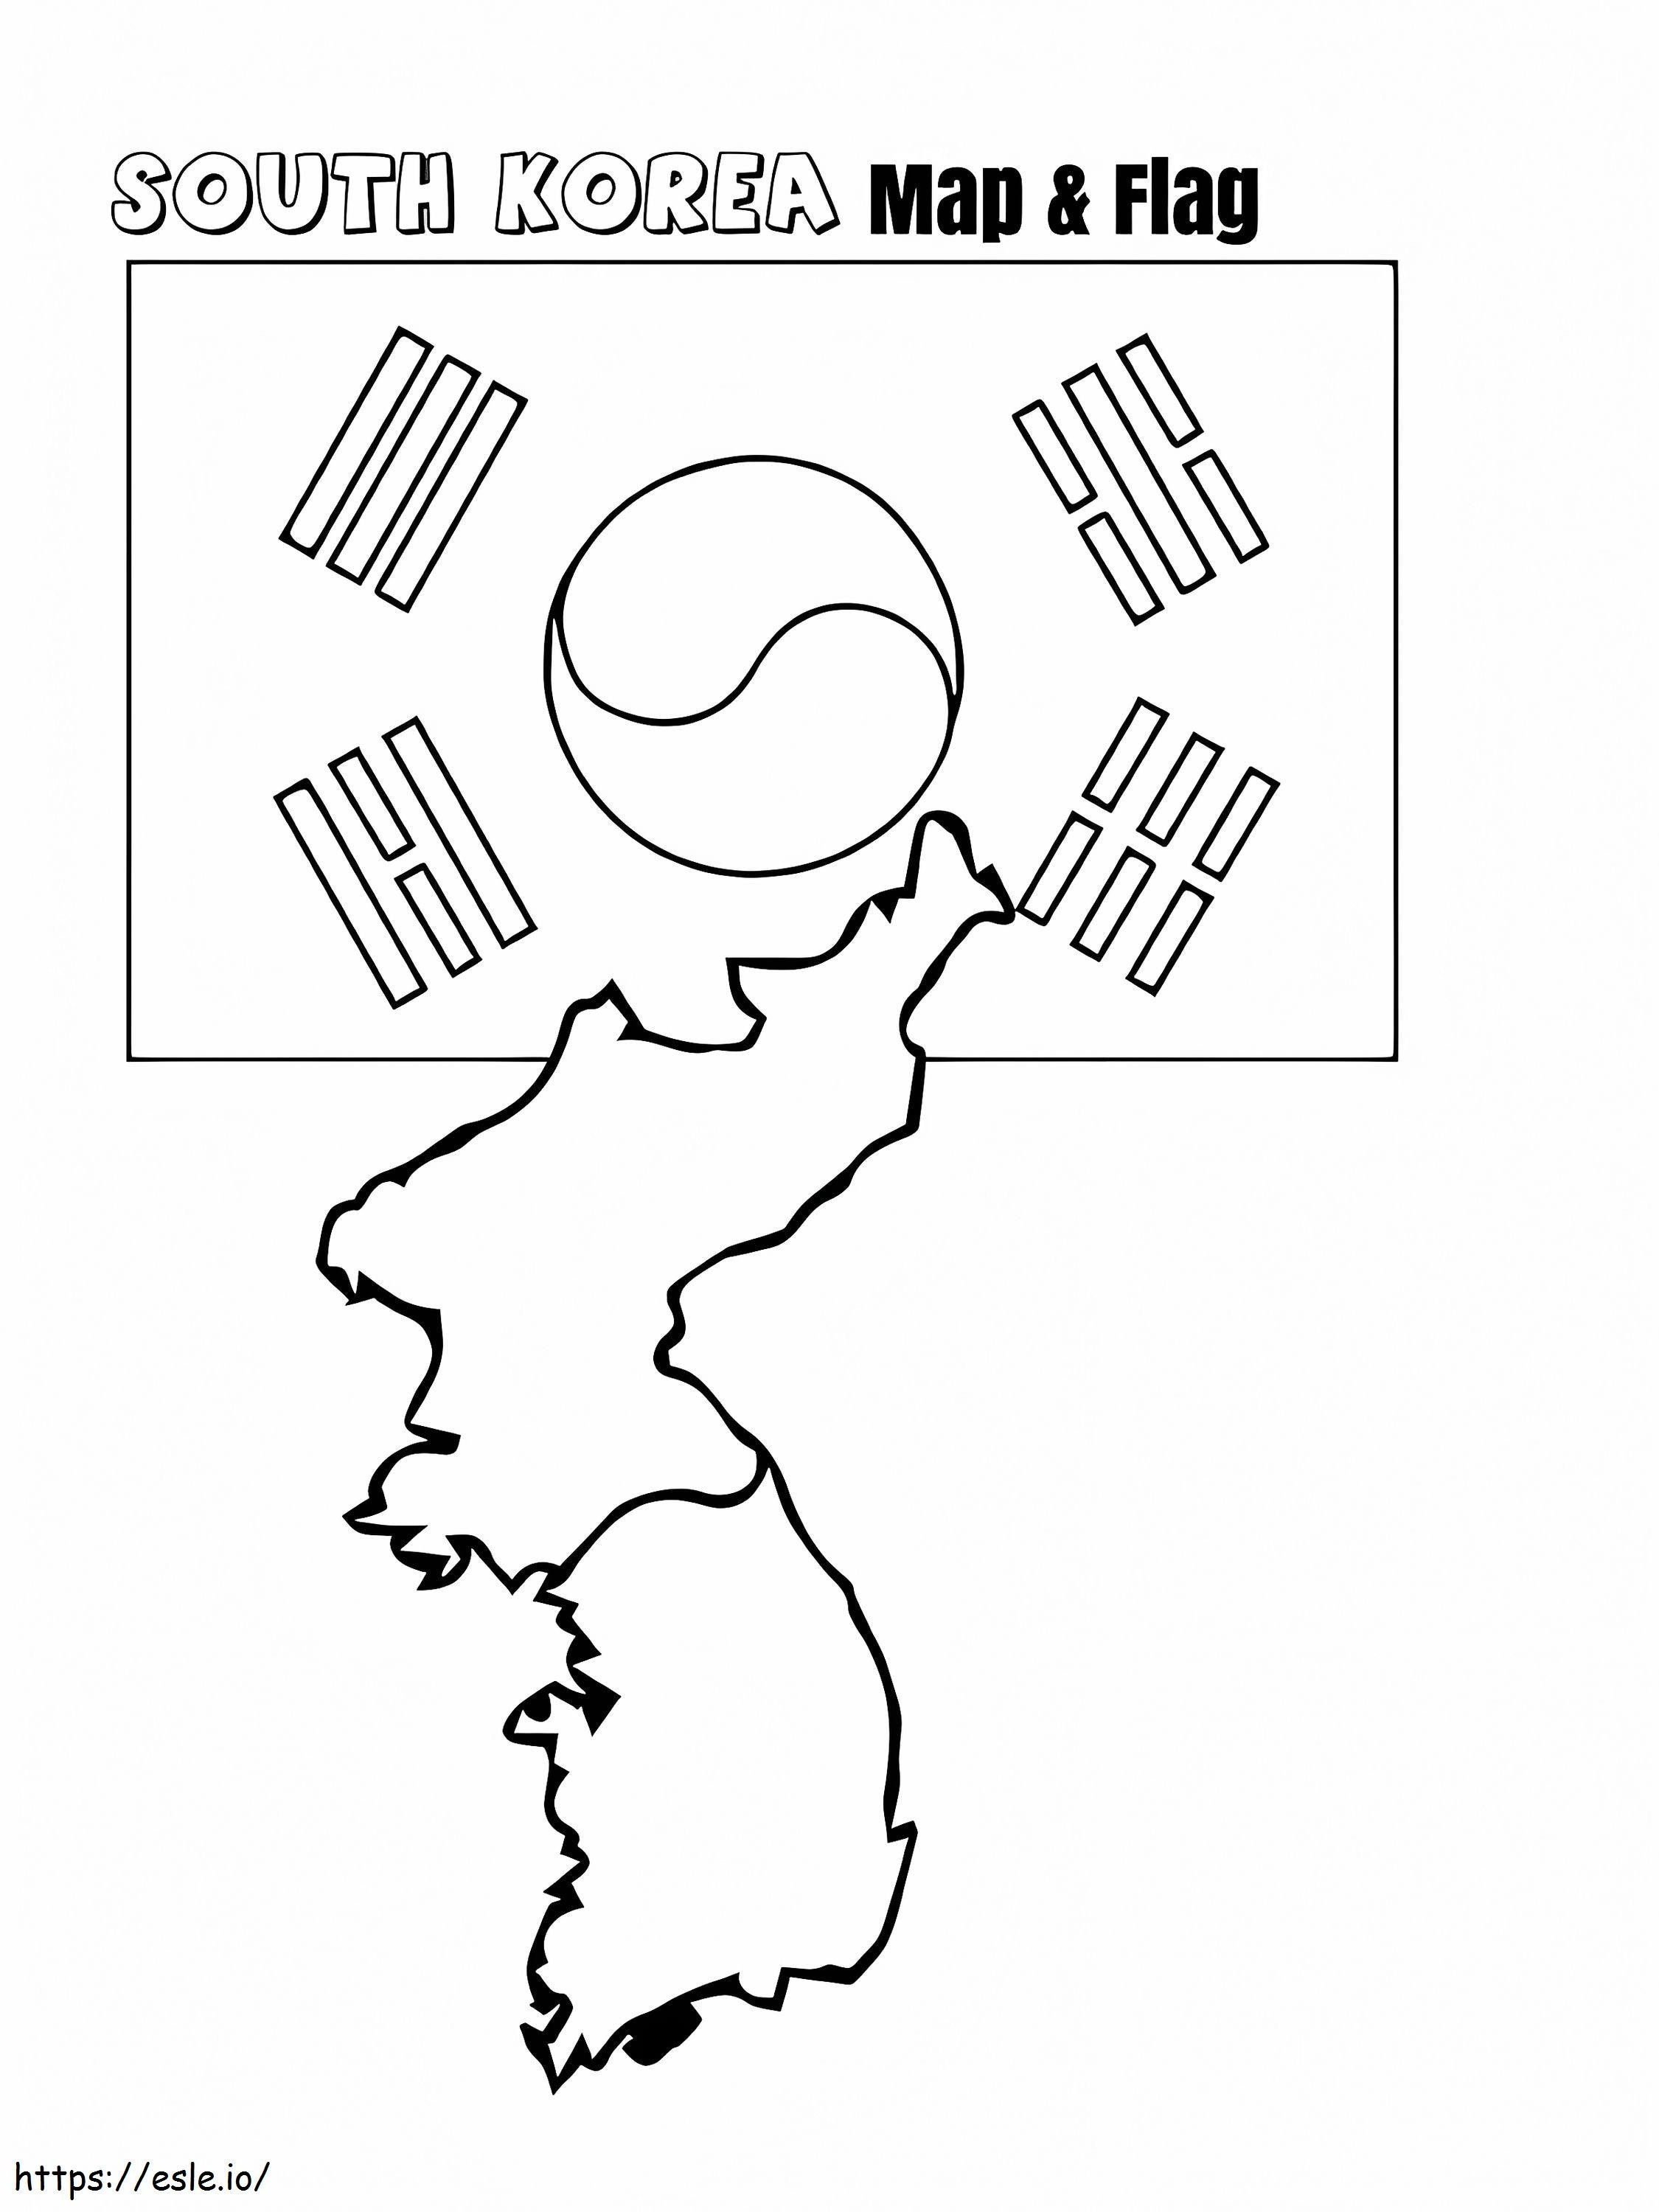 Südkorea-Karte und Flagge ausmalbilder